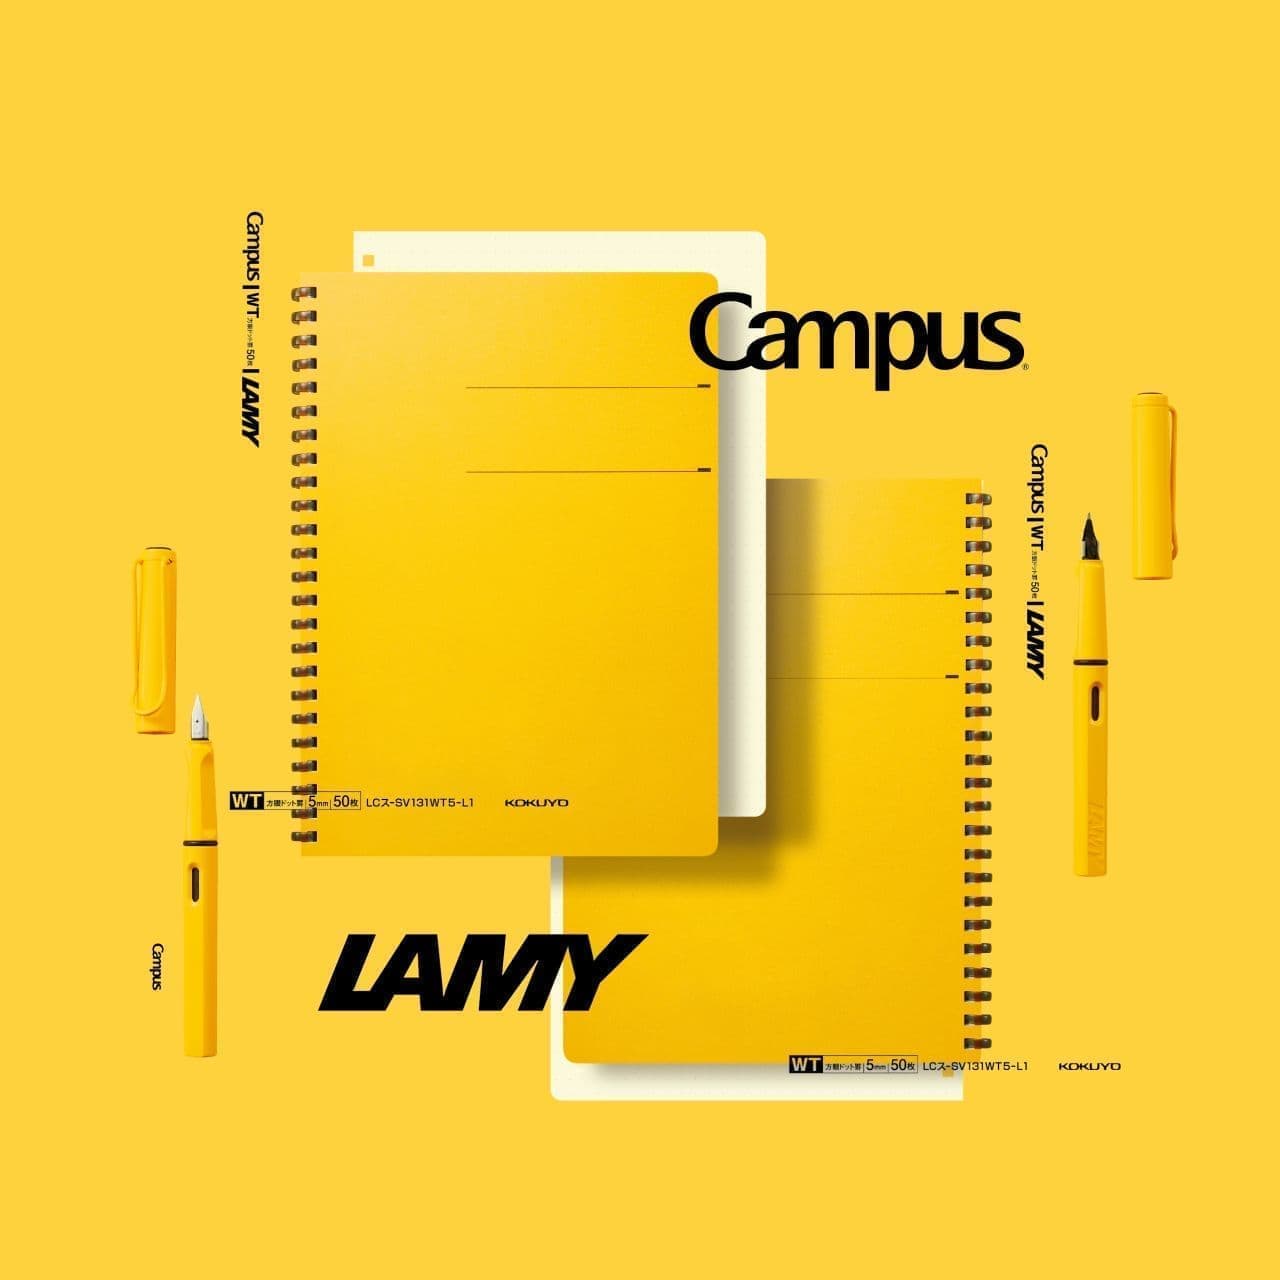 コクヨ「LAMY/Campusソフトリングノート」ドイツの筆記具ブランドと